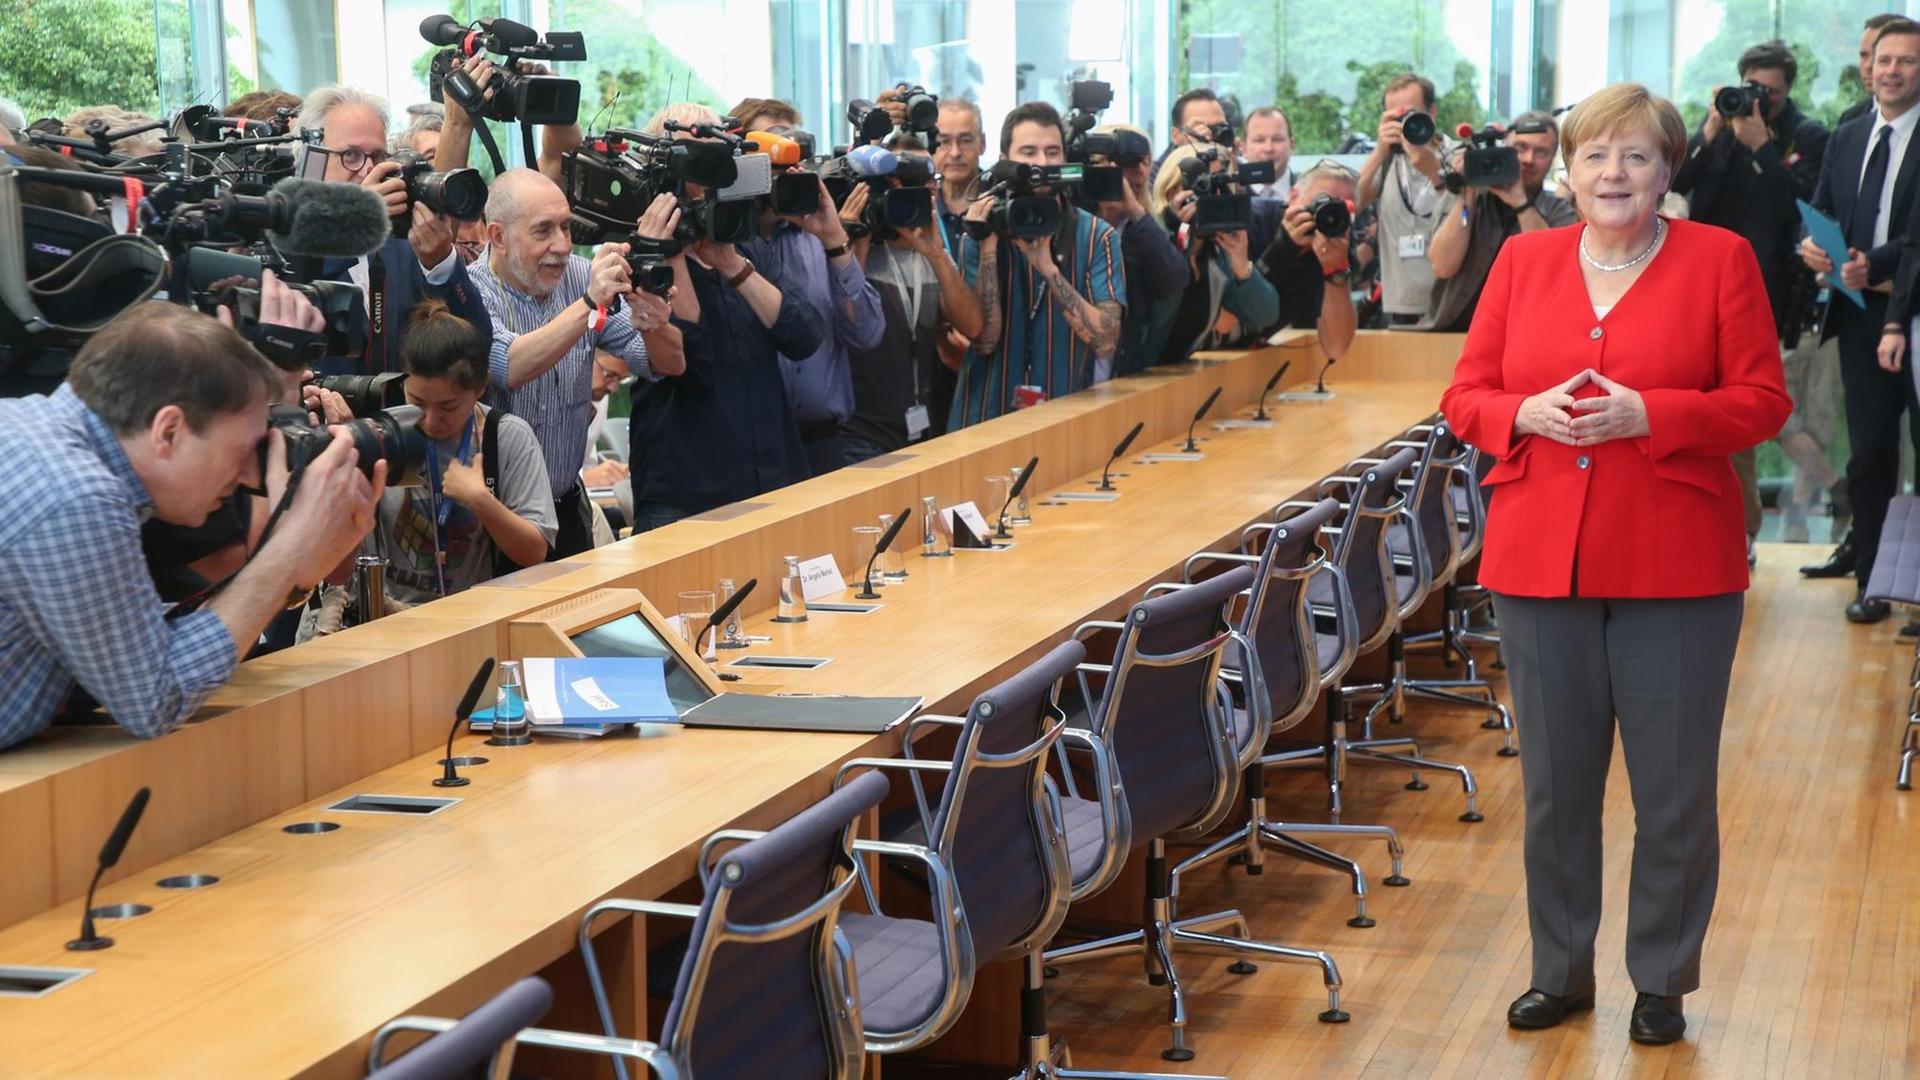 Foto- und Fernsehjournalisten drängen sich vor dem Rednerpult, Merkel steht dahinter und legt die Hände zur Raute zusammen.